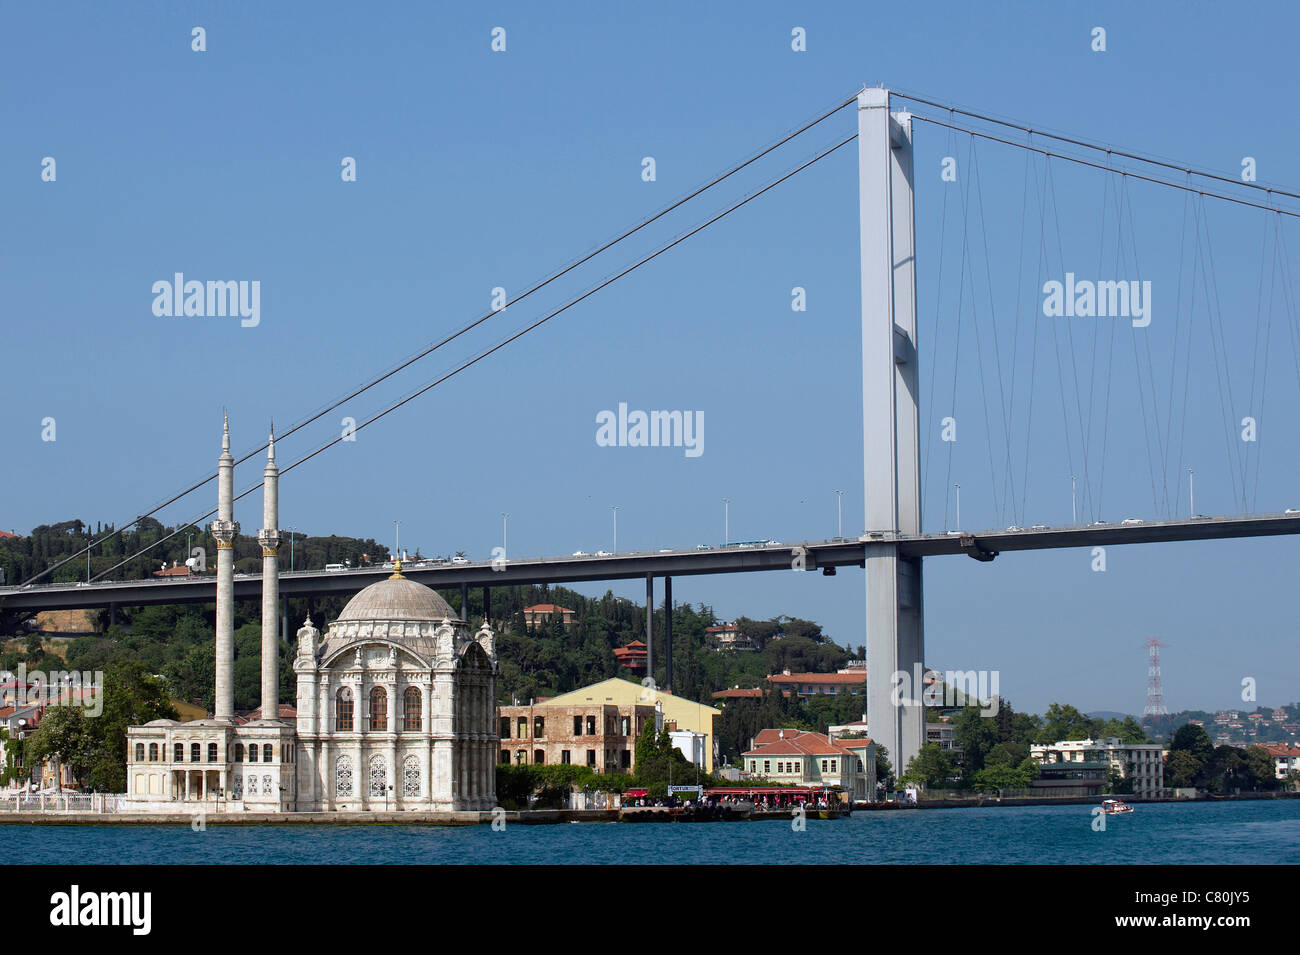 Turkey, Istanbul, Bosphorus European Side, Ortakoy Mosque background Ataturk bridge Stock Photo